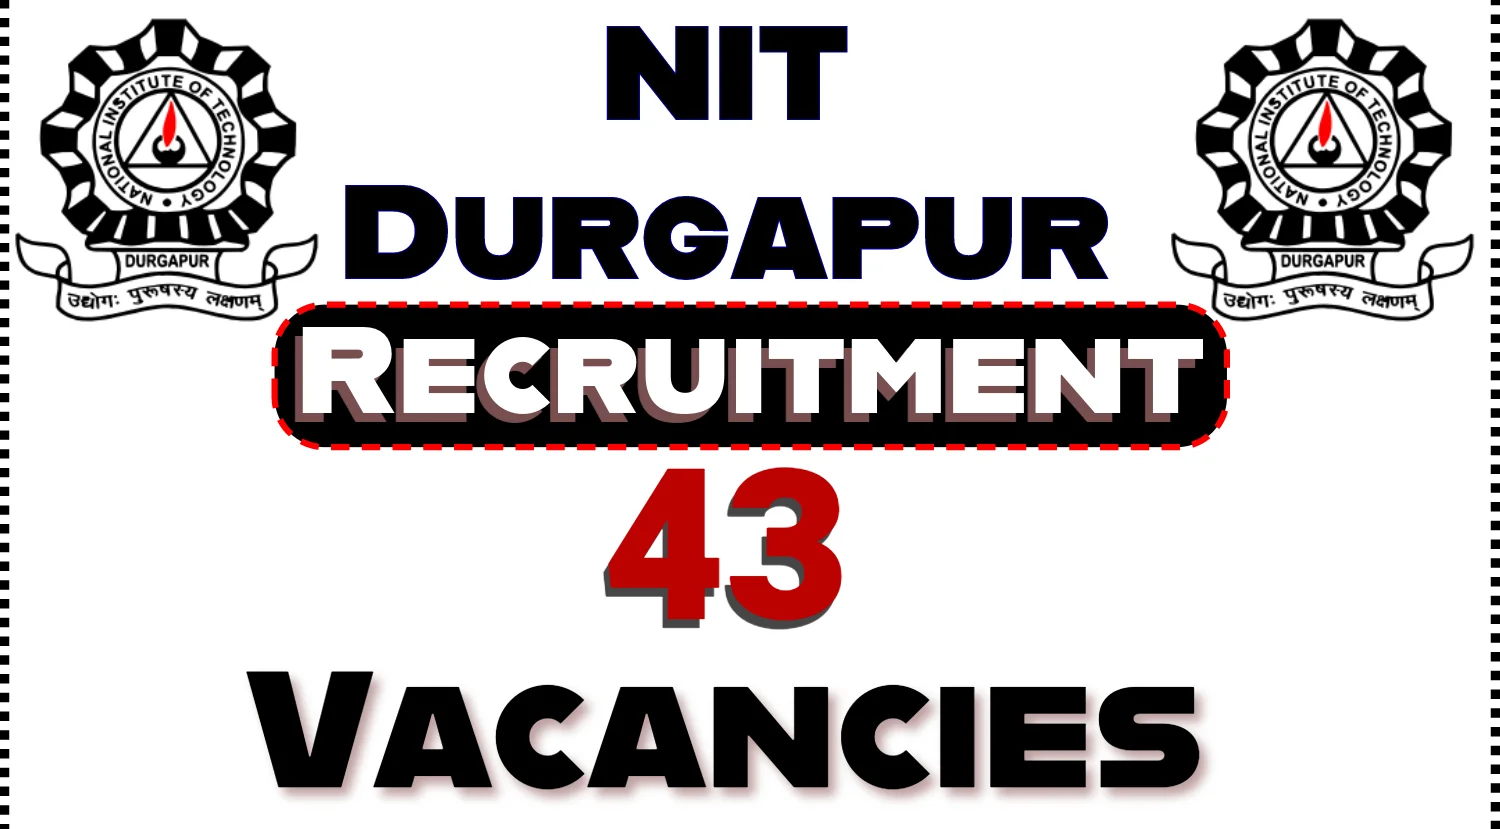 NIT Durgapur Recruitment